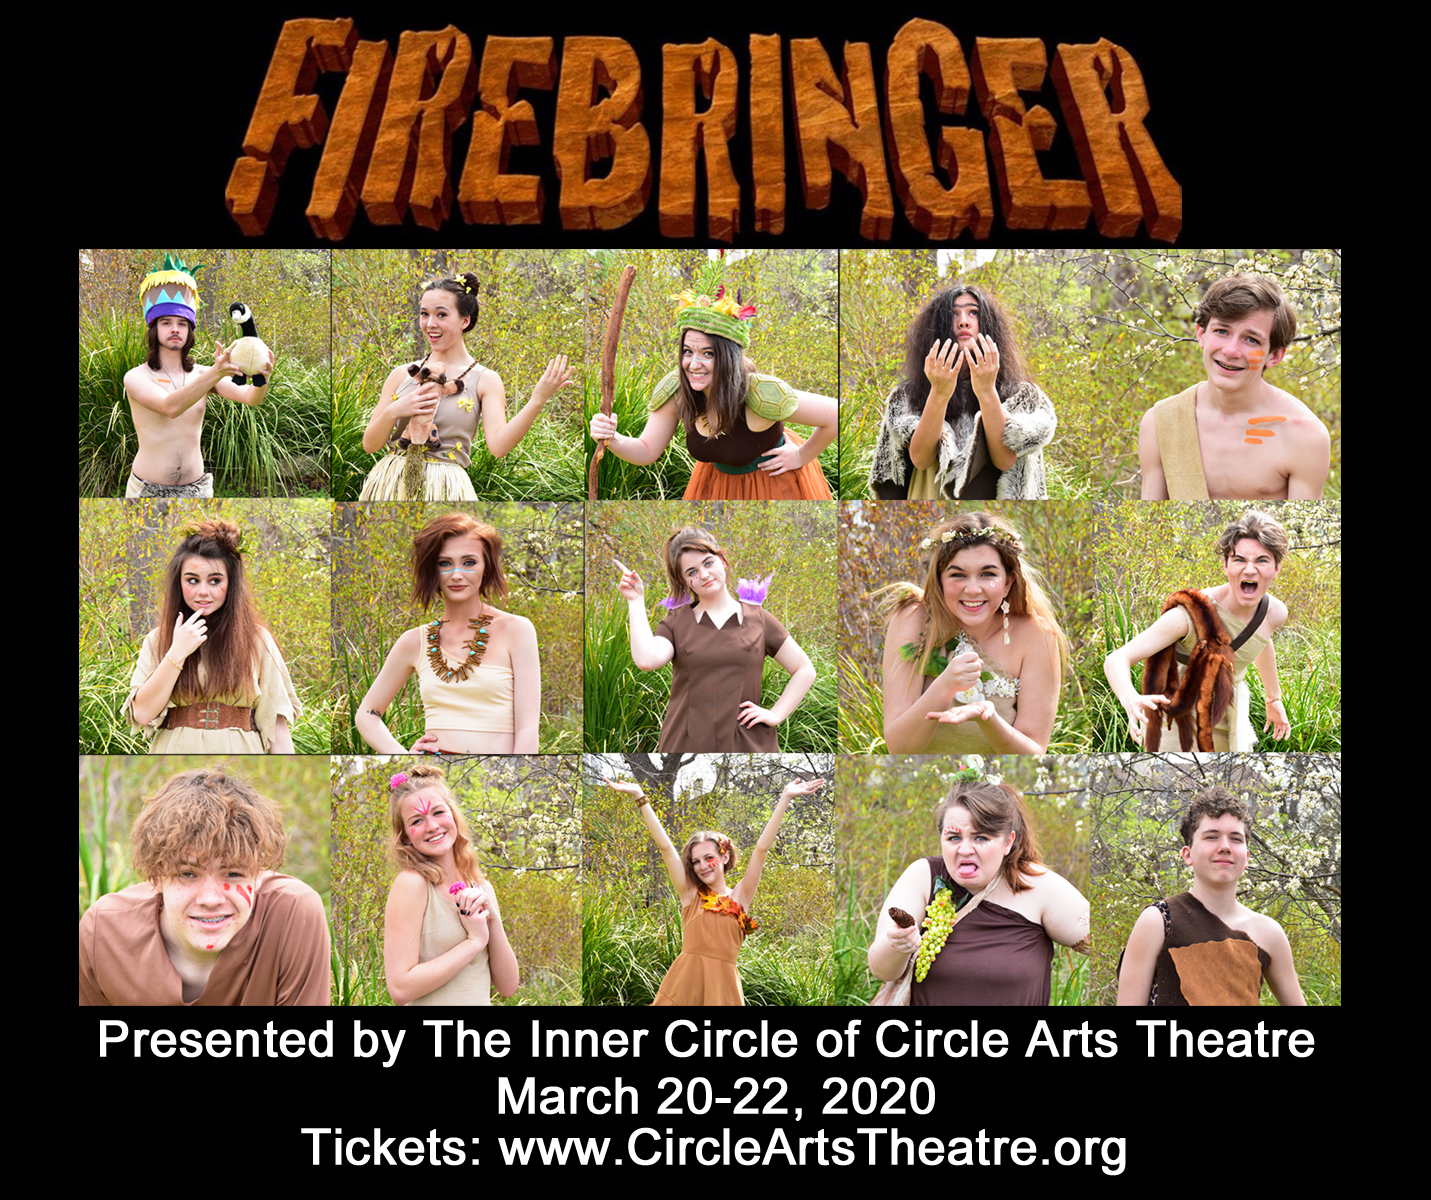 Cast of Firebringer at Circle Arts Theatre